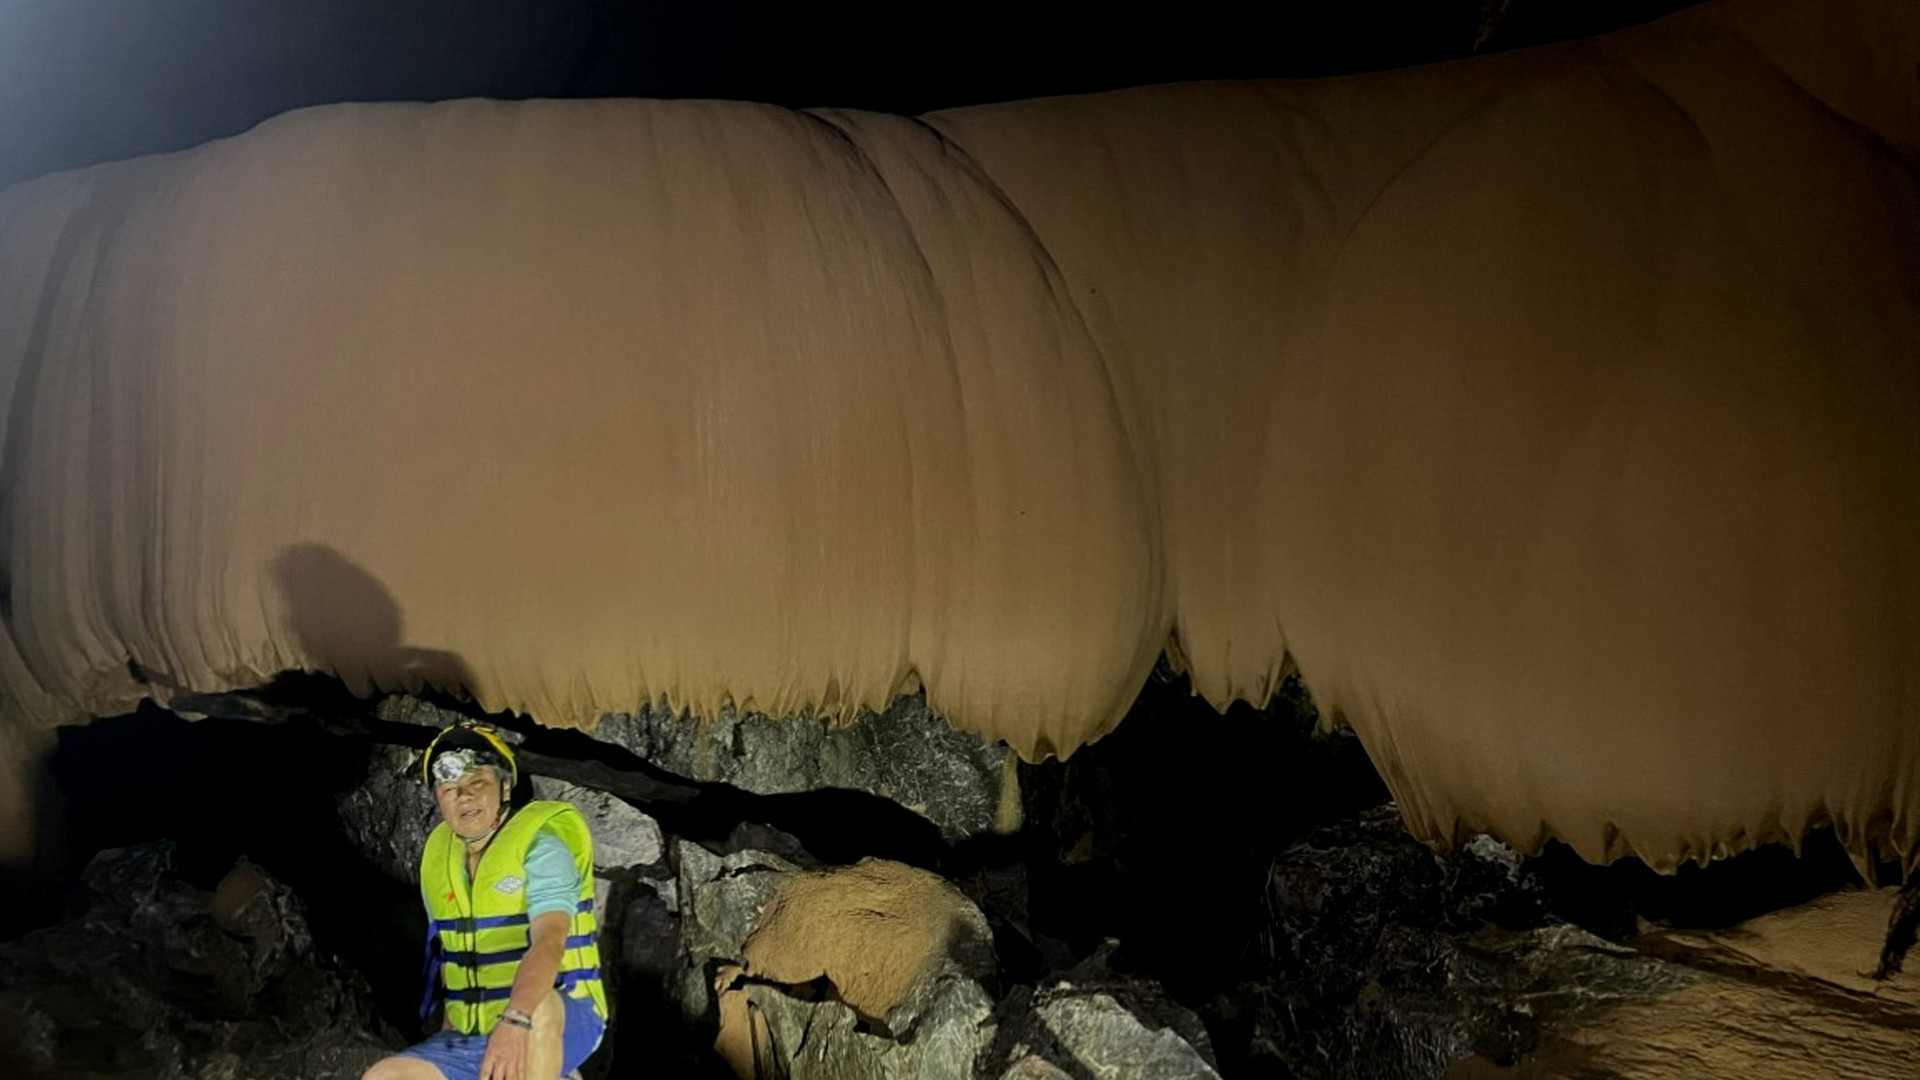 Hệ thạch nhũ đẹp mê hồn bên trong hang Lũ, hang động vừa mới được phát hiện tại xã Trường Sơn - Ảnh: TR.TUẤN